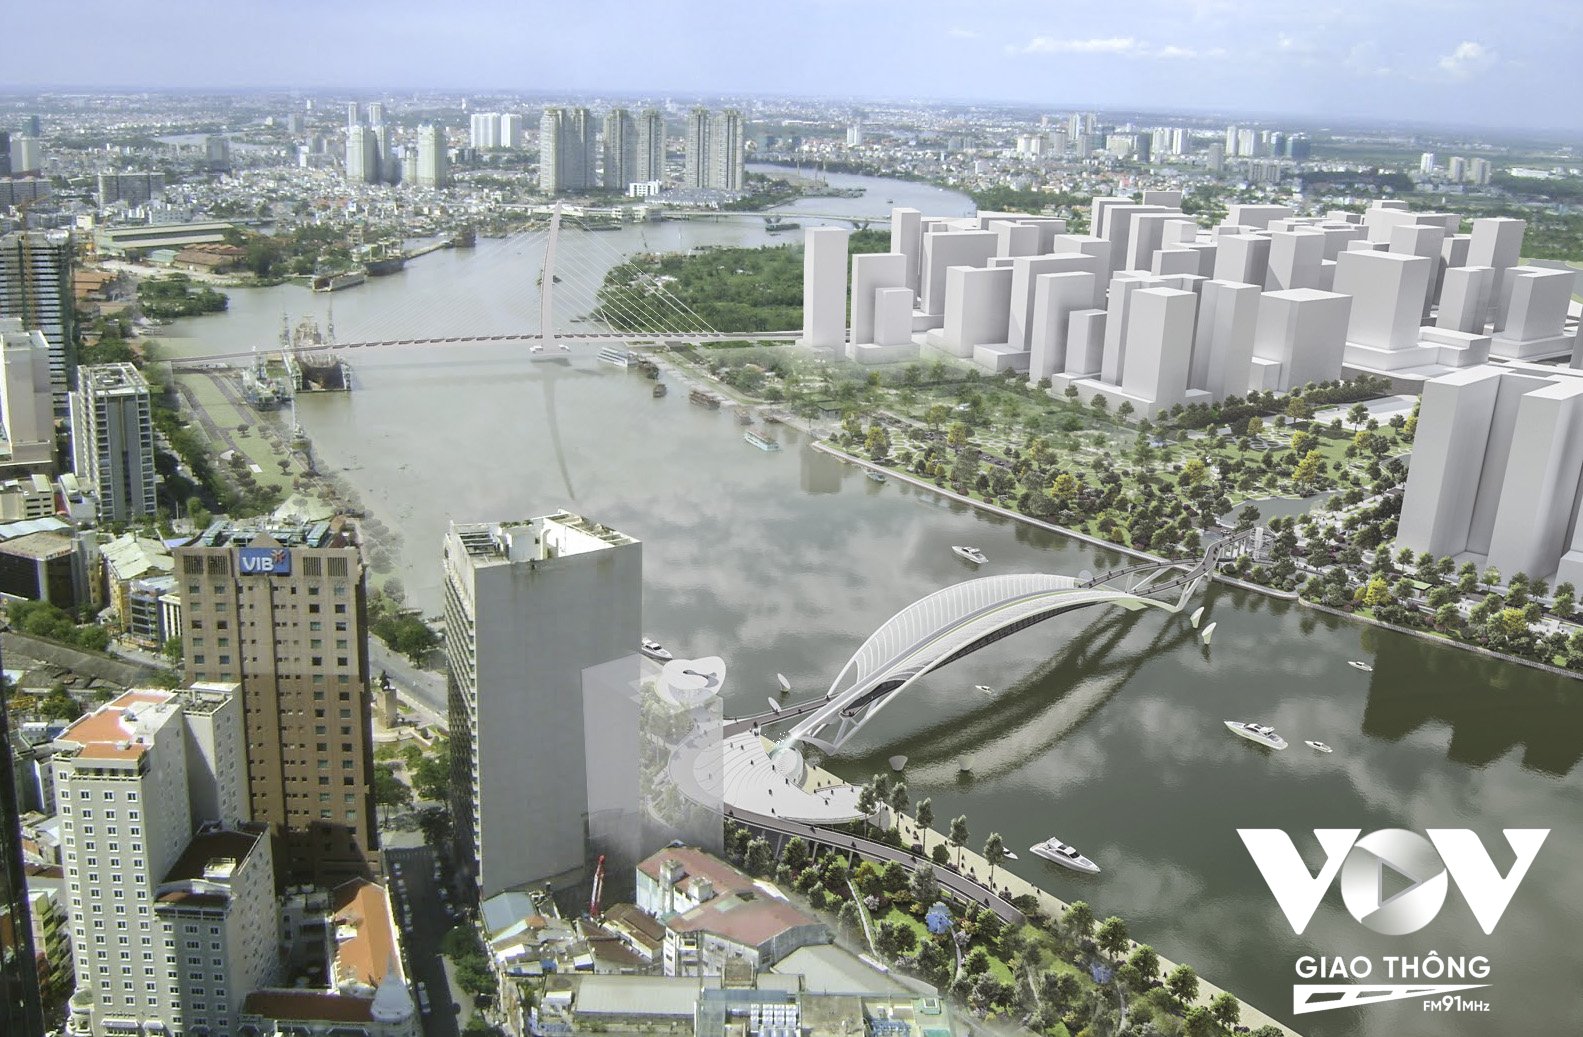 Cầu đi bộ qua Sông Sài Gòn sẽ có hình dáng của chiếc lá dừa nước – một hình ảnh quen thuộc của vùng đất Phương Nam (Ảnh: Sở QHKT TP.HCM)